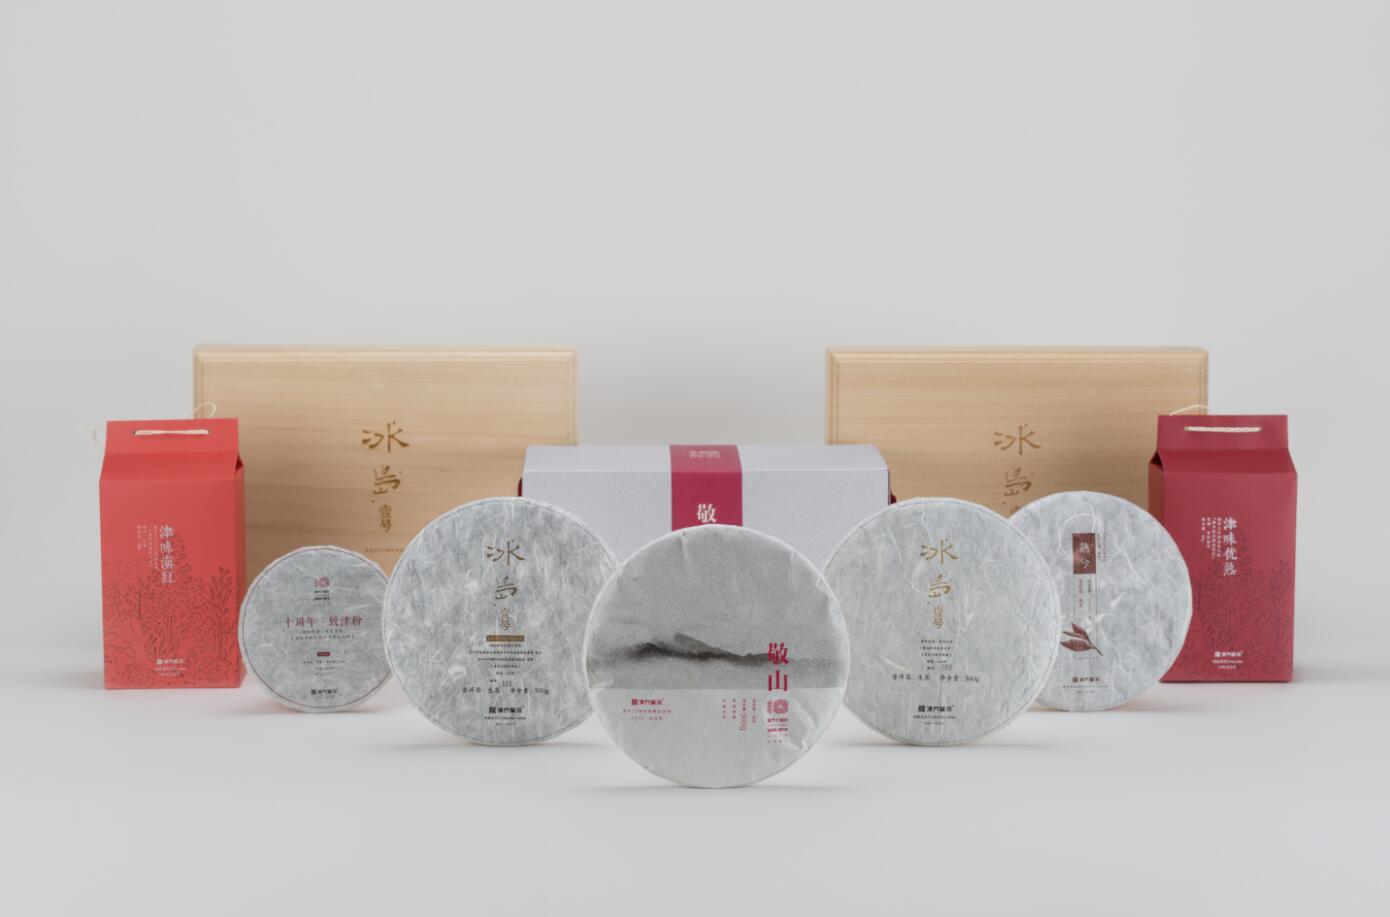 【动态】津乔2018十周年纪念茶品发布，十年力作“敬山”携新品上市（文末留言祝福）